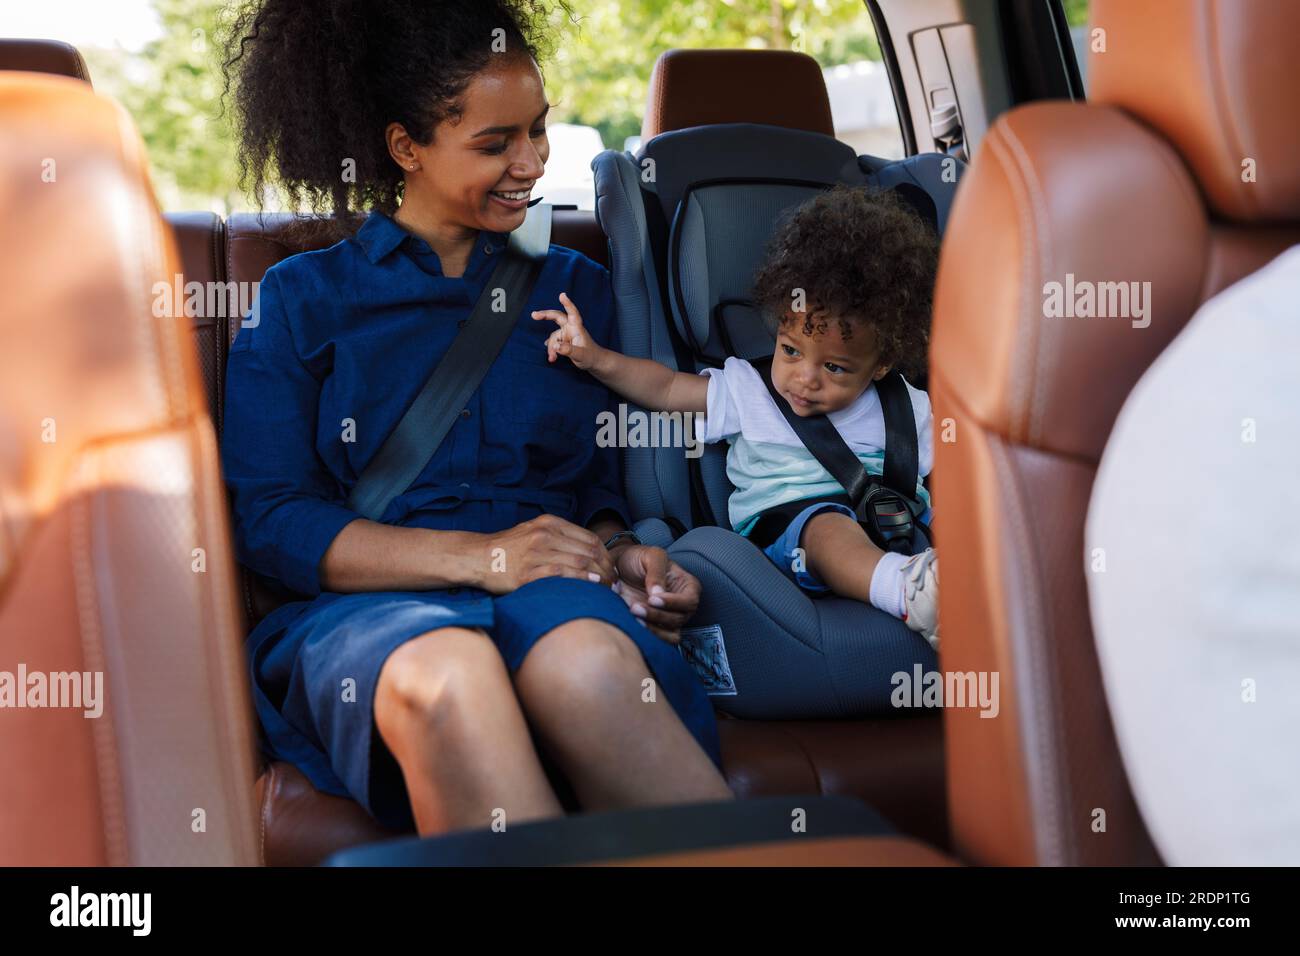 Junge lächelnde Mutter und ihr kleiner Sohn sitzen zusammen auf dem Rücksitz eines Taxis Stockfoto